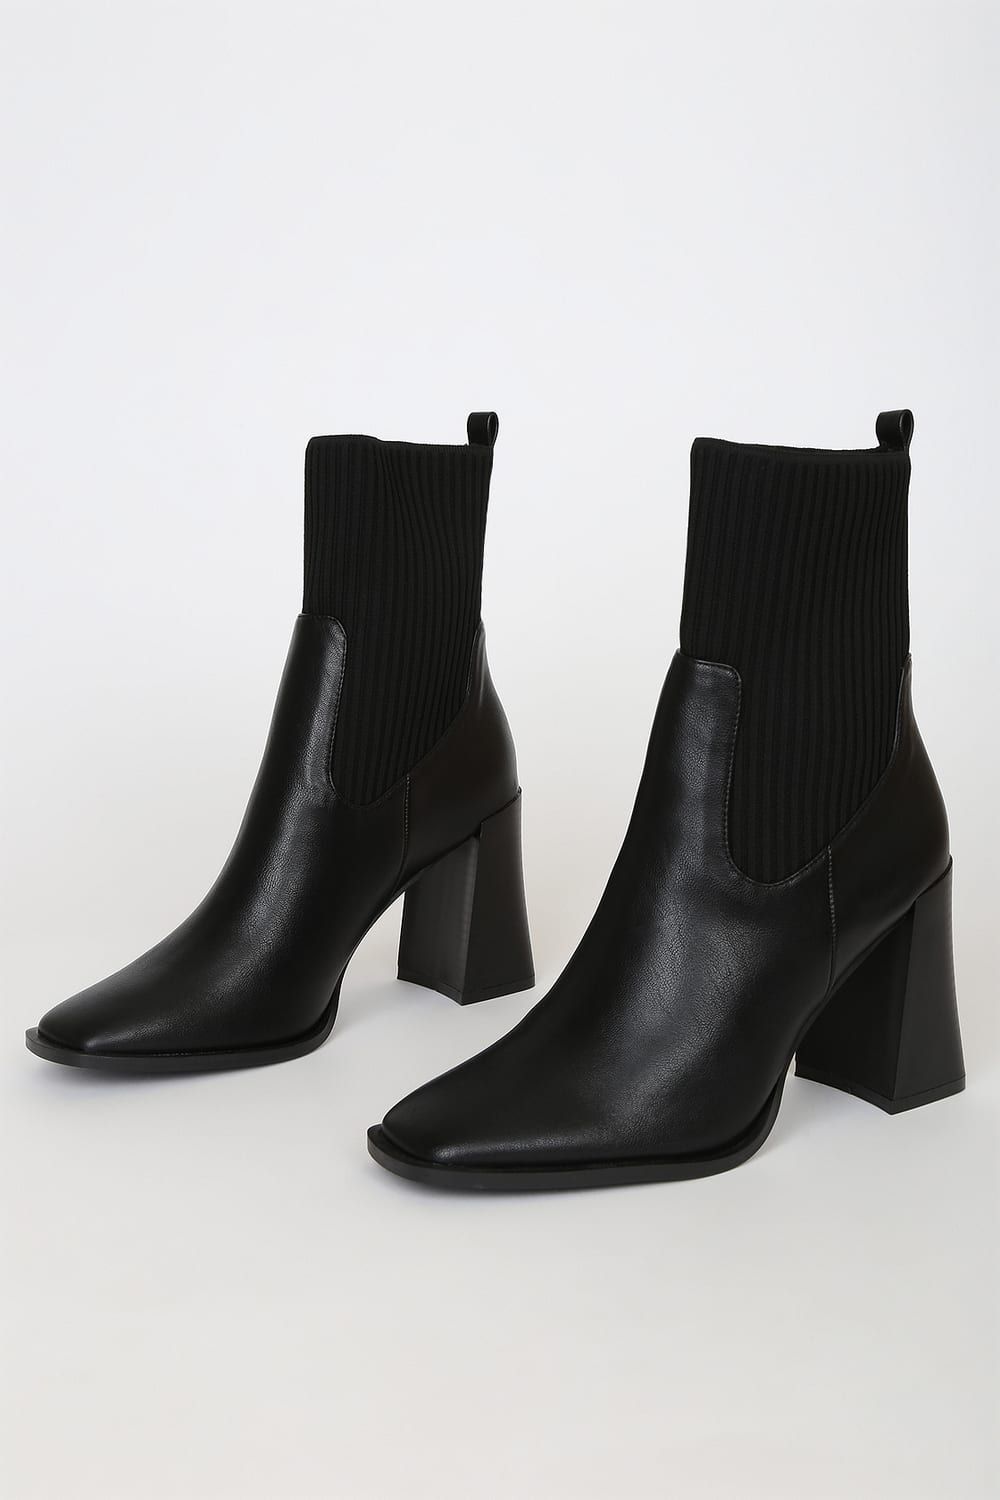 Naynee Black Square Toe Mid-Calf Boots | Lulus (US)